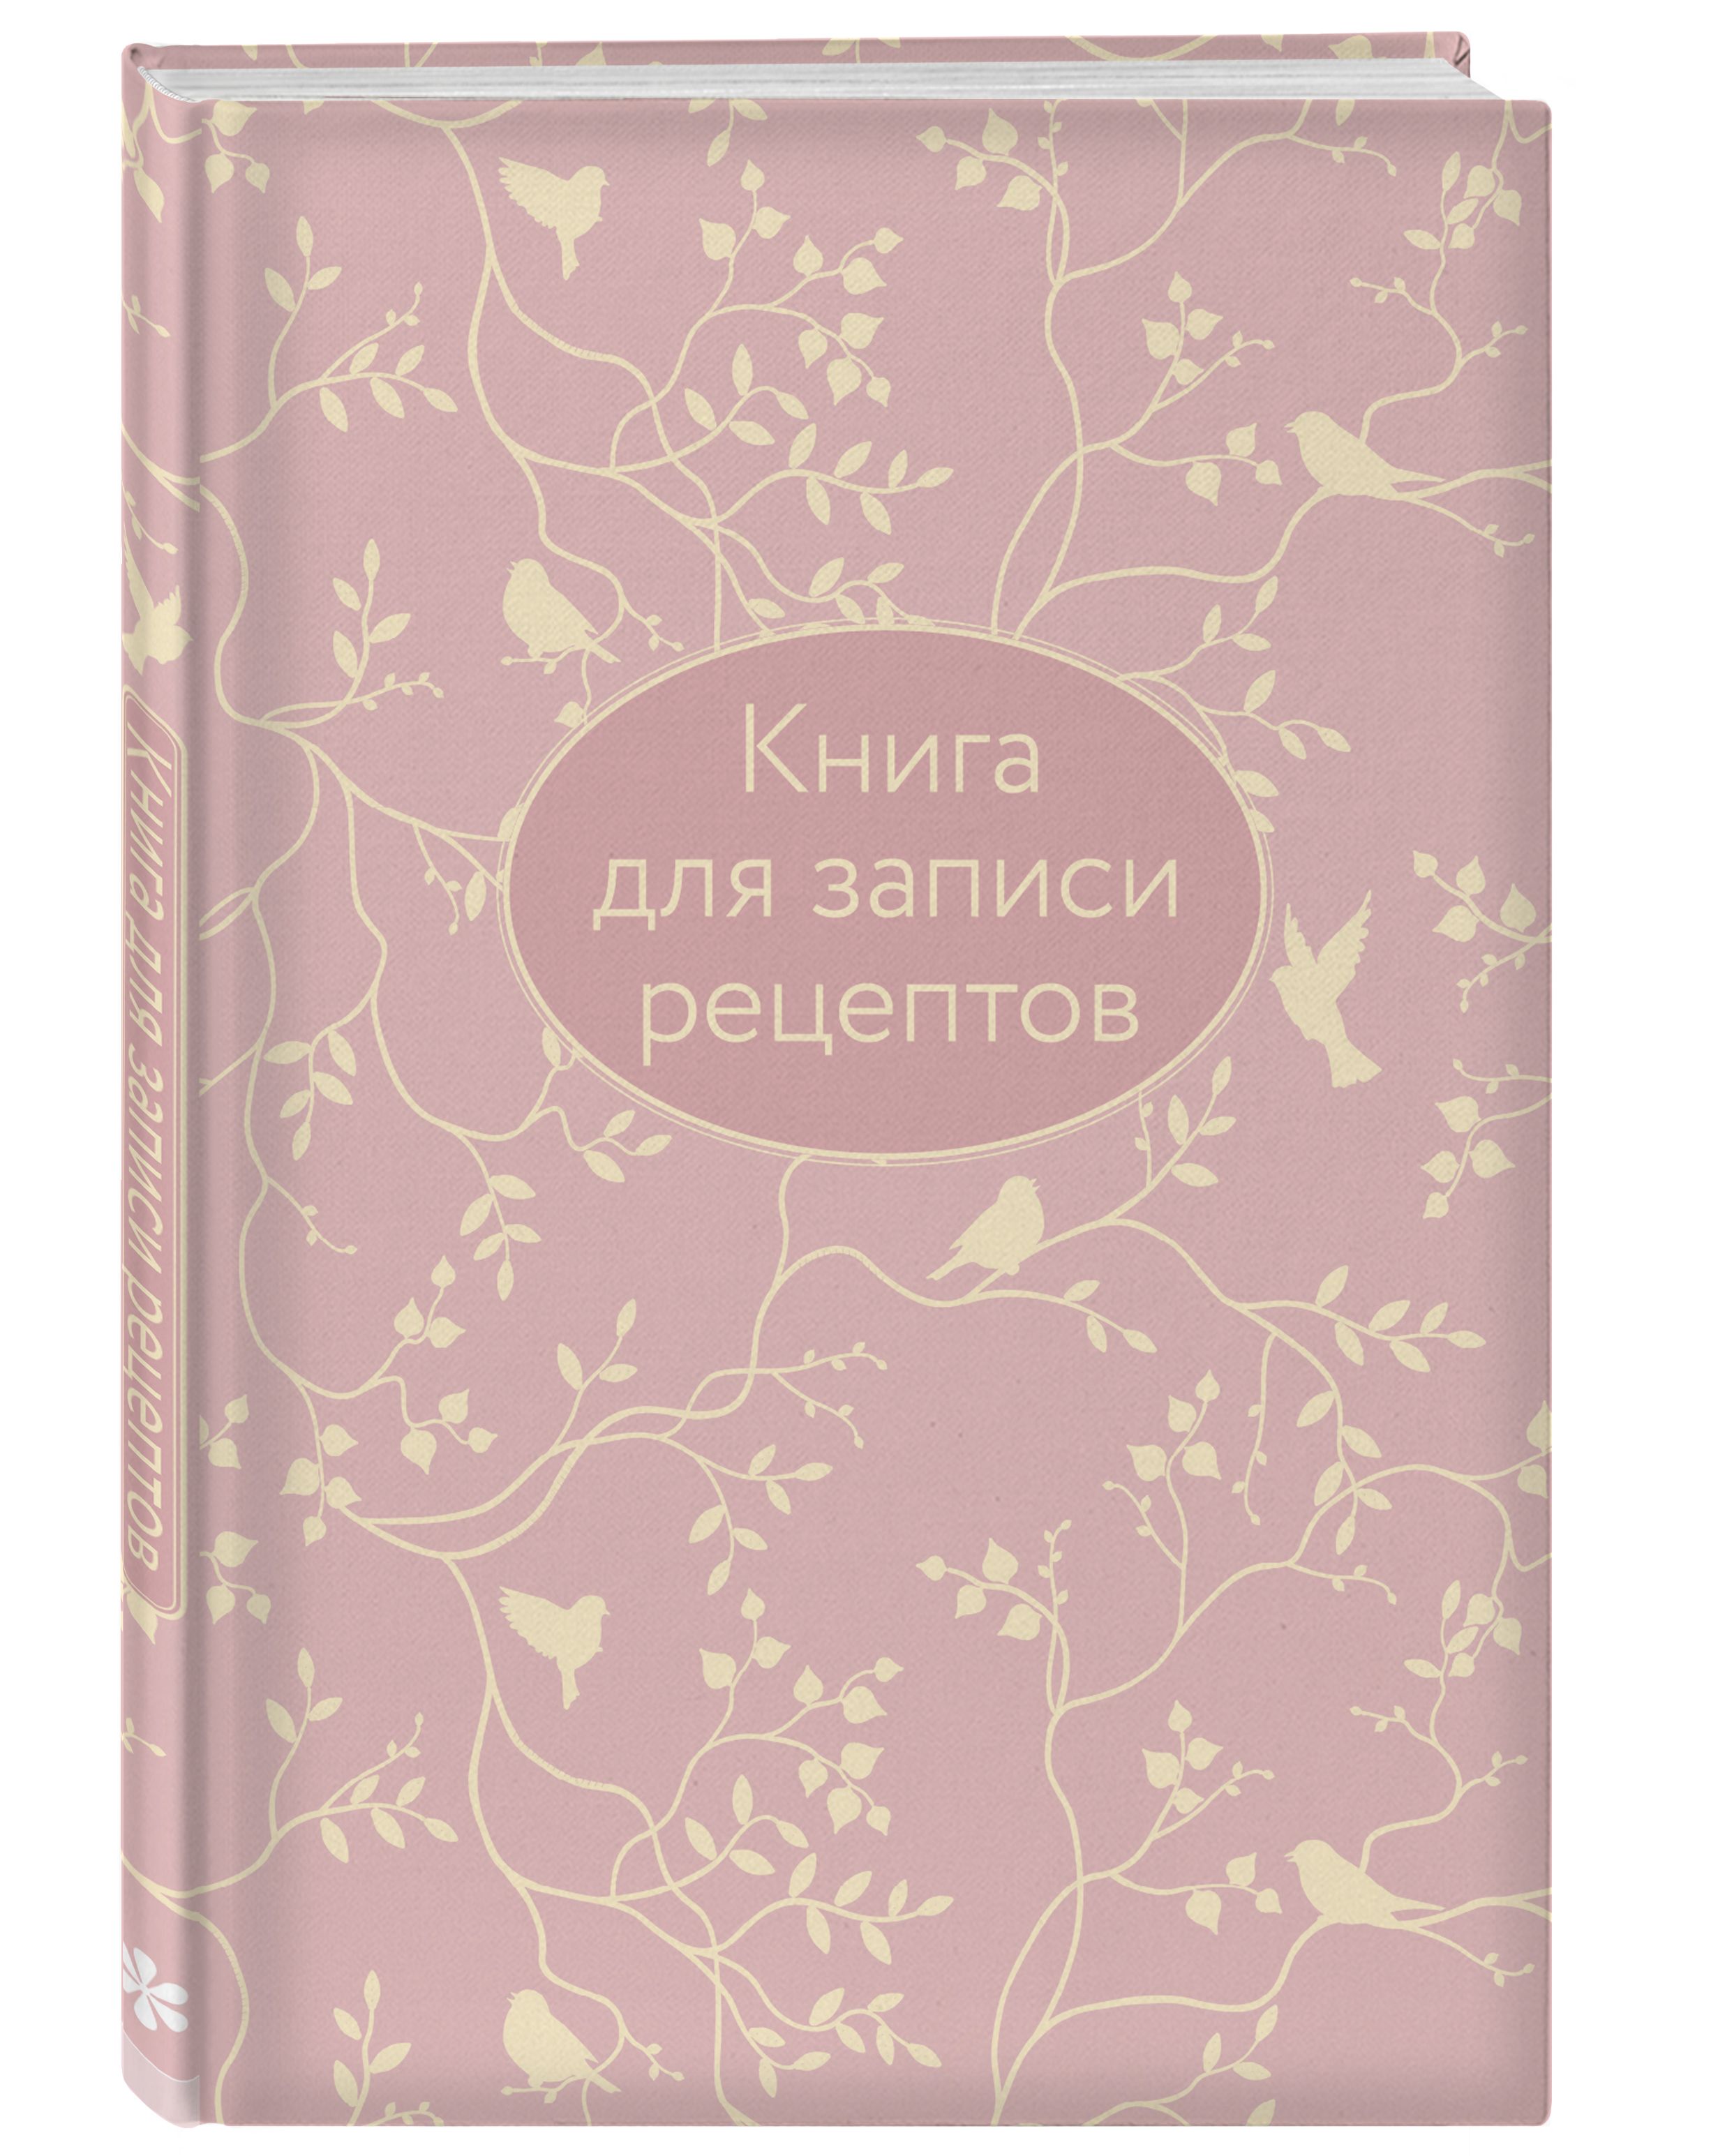 Книга для записи рецептов (розовая с фольгой) (А5)